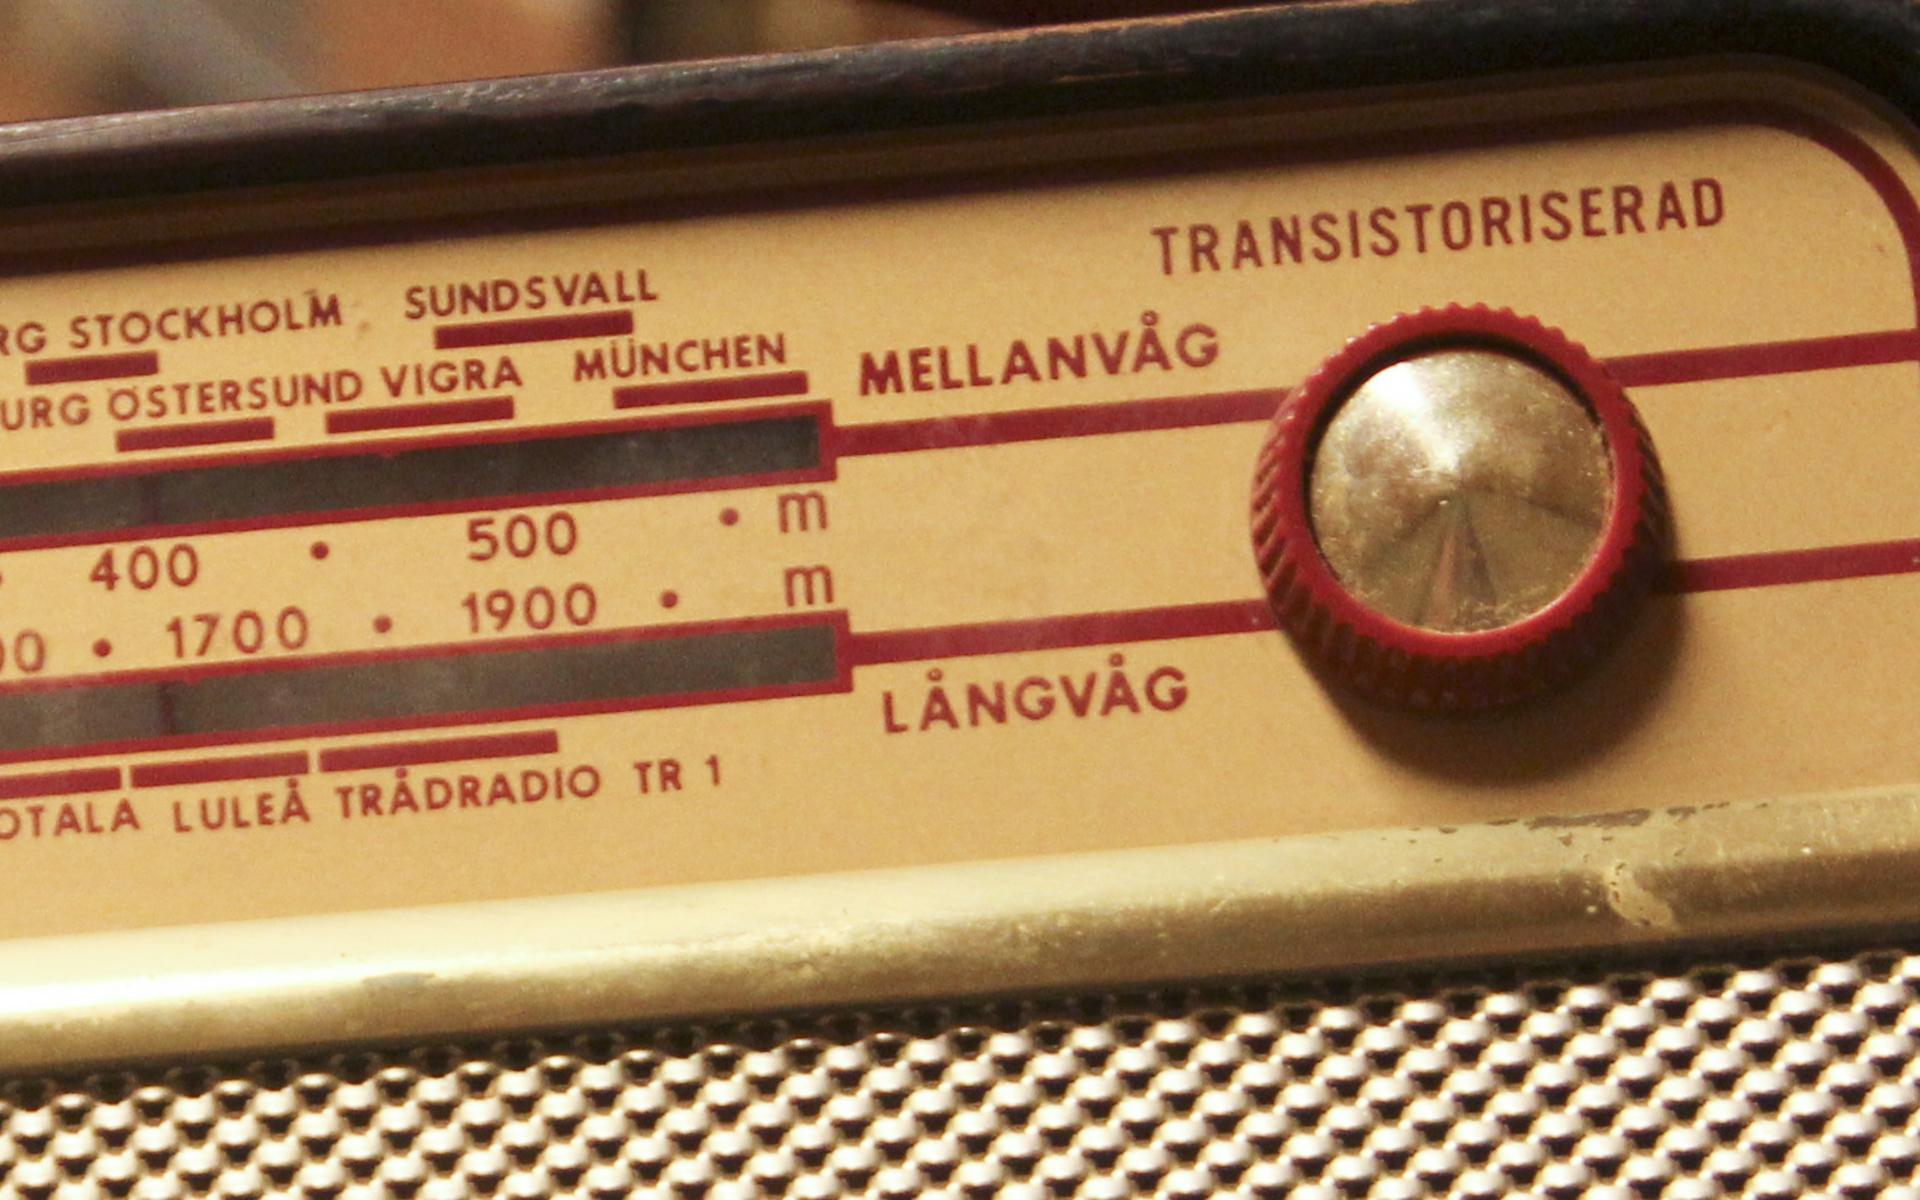 Minns du din transistorradio? När du skruvade mellan radiofrekvenserna uppstod en snart bortglömd ljudmosaik. Vi tittar närmare in i kulisserna på Hallands kulturhistoriska museums magasin där tekniken finns bevarad.